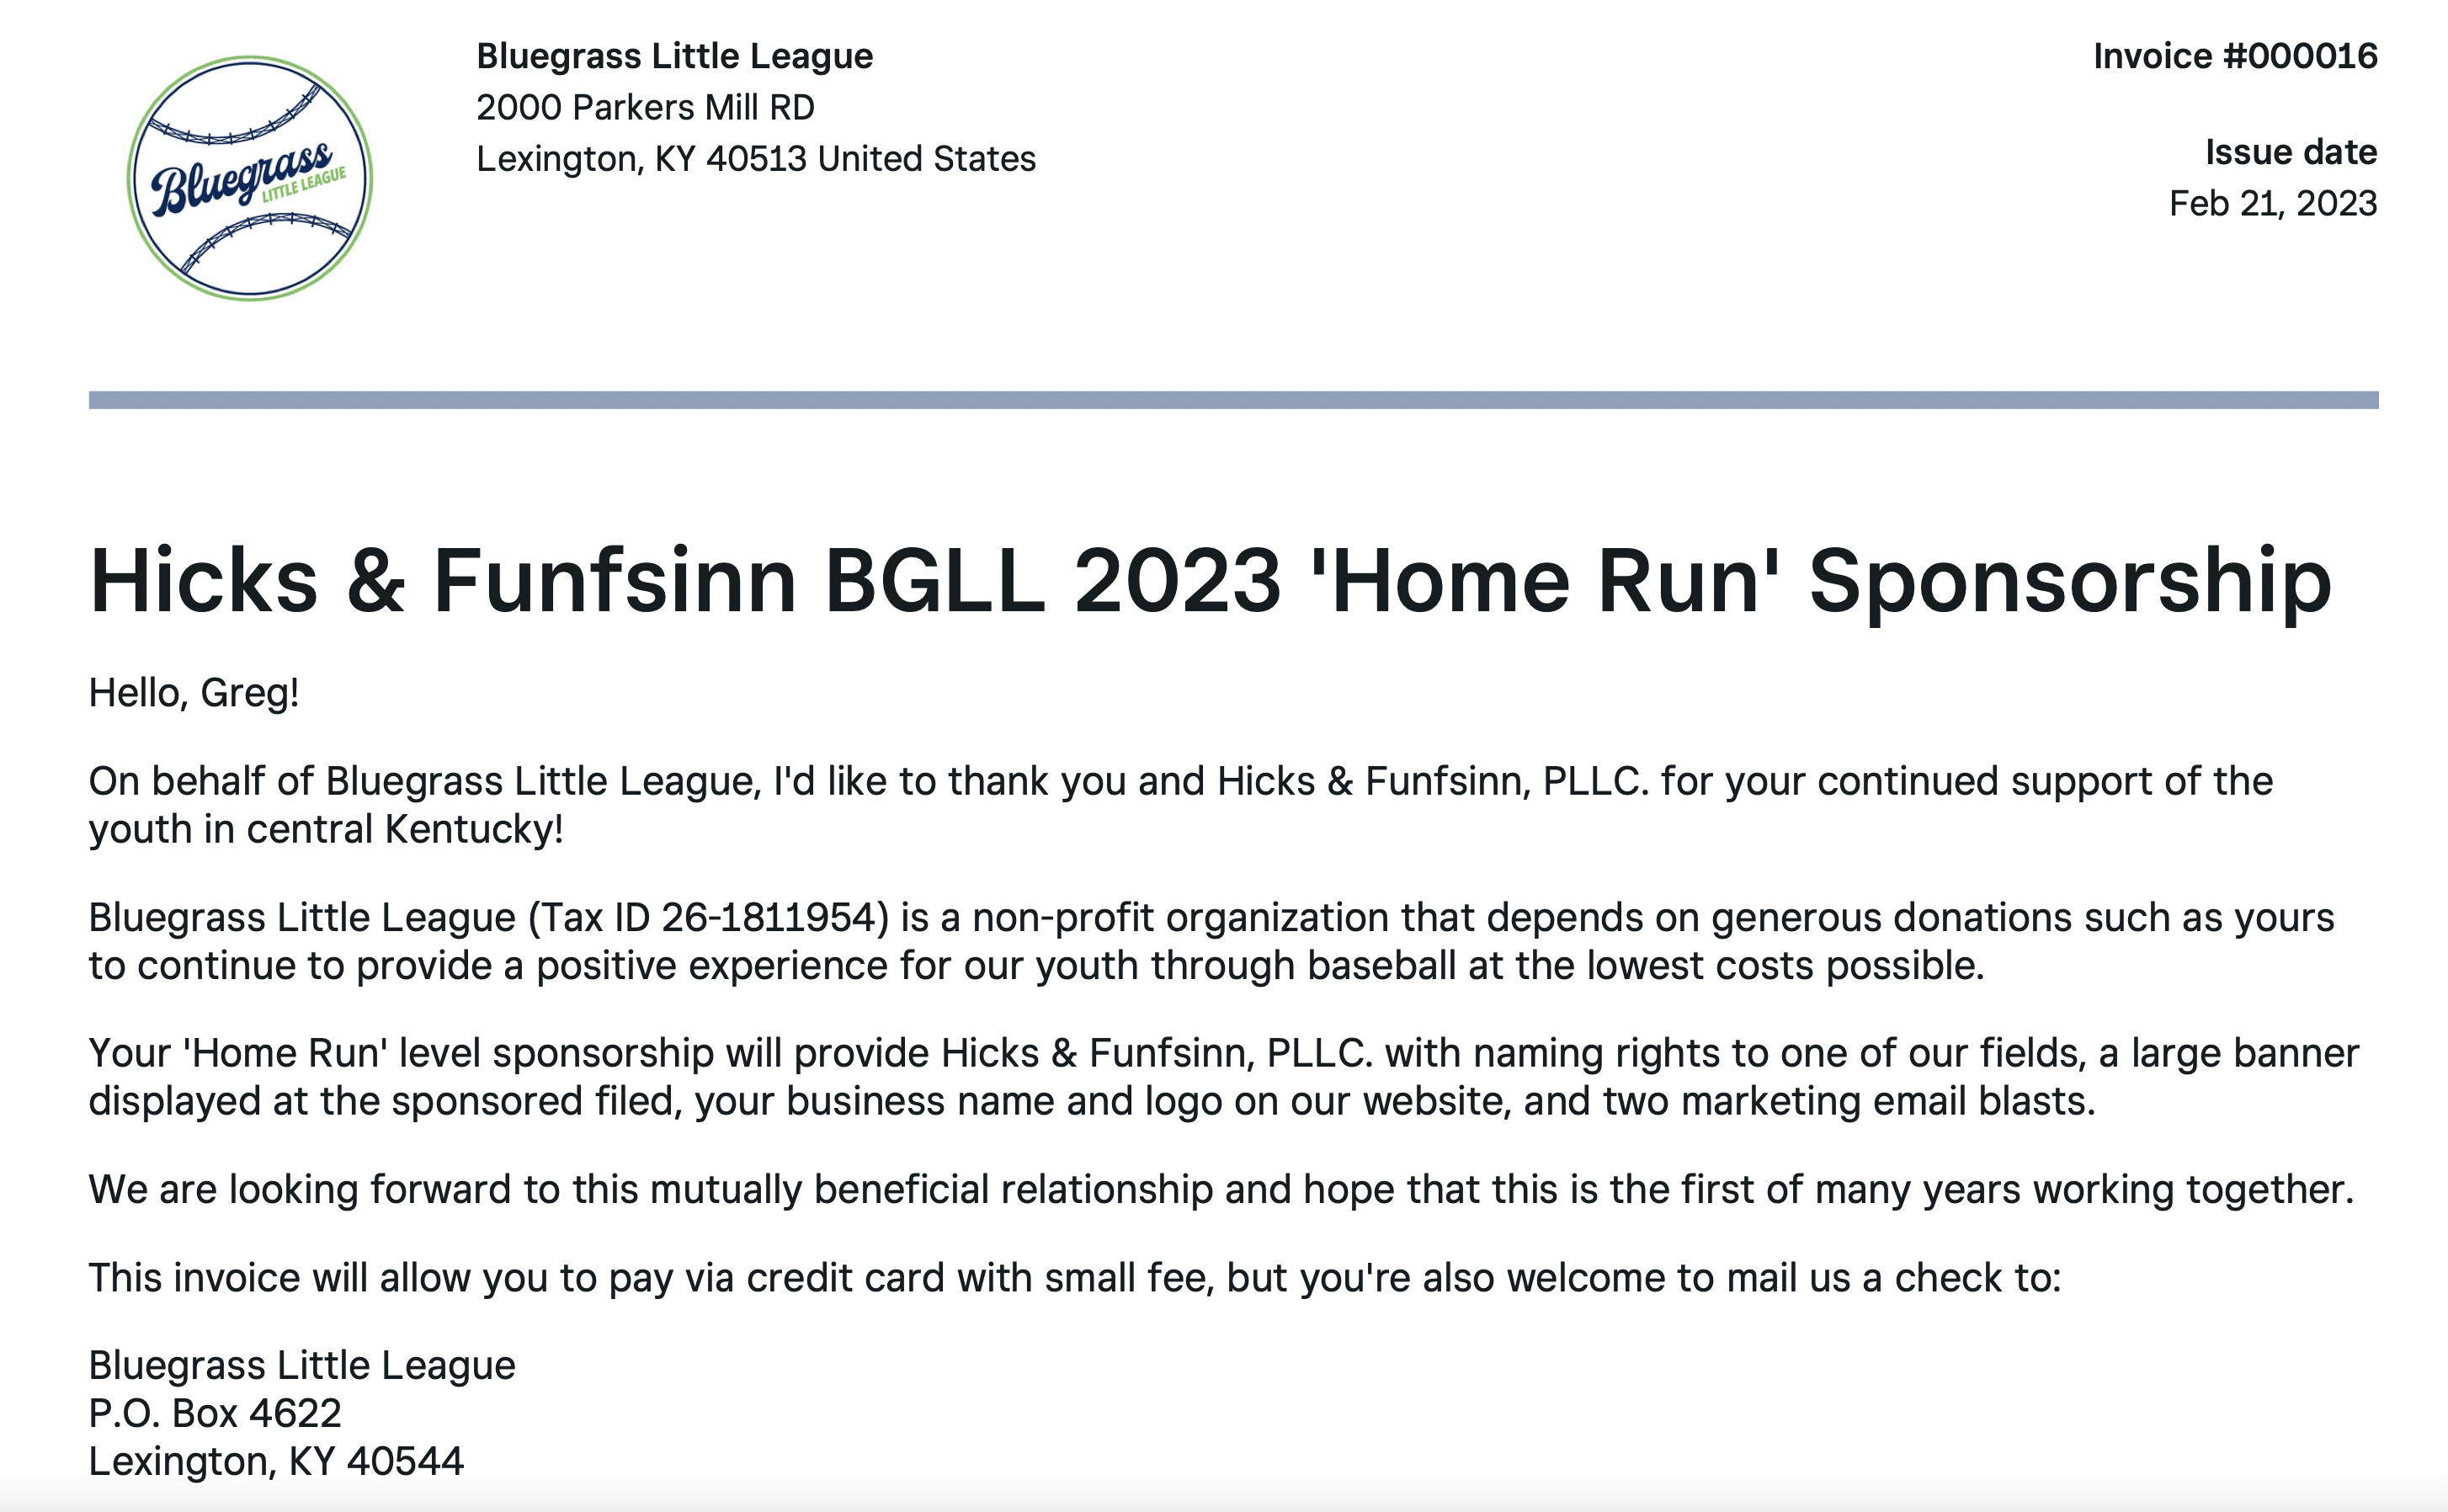 Letter from Bluegrass Little League thanking Hicks & Funfsinn BGLL for sponsoring a field and banner. 